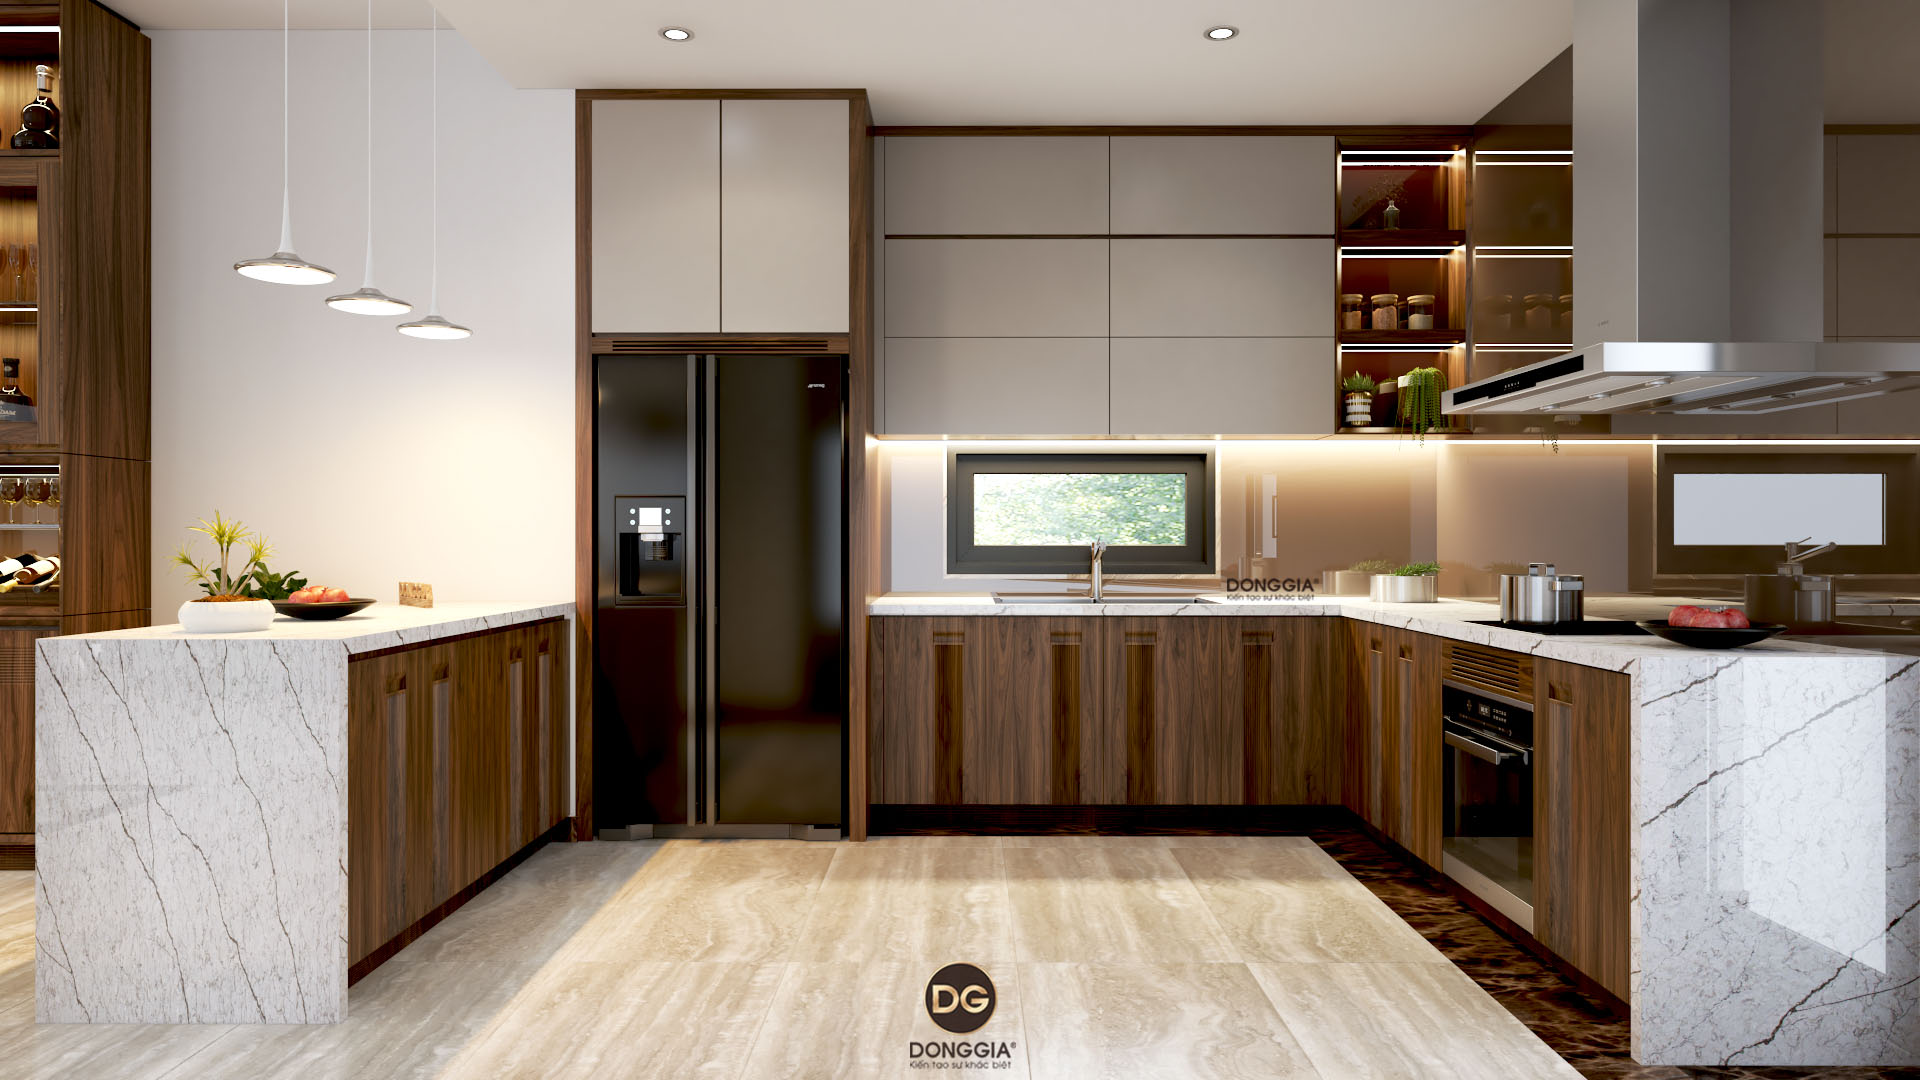 Xu hướng thiết kế nội thất phòng bếp năm 2021 sẽ tập trung vào sự kết hợp giữa phong cách hiện đại và cổ điển. Với việc sử dụng vật liệu đa dạng, màu sắc đậm nét và tính năng thông minh, các bếp sẽ khiến cho không gian sống của bạn trở nên sang trọng và thân thiện hơn. Cùng xem hình ảnh để khám phá xu hướng thiết kế nội thất phòng bếp năm nay.